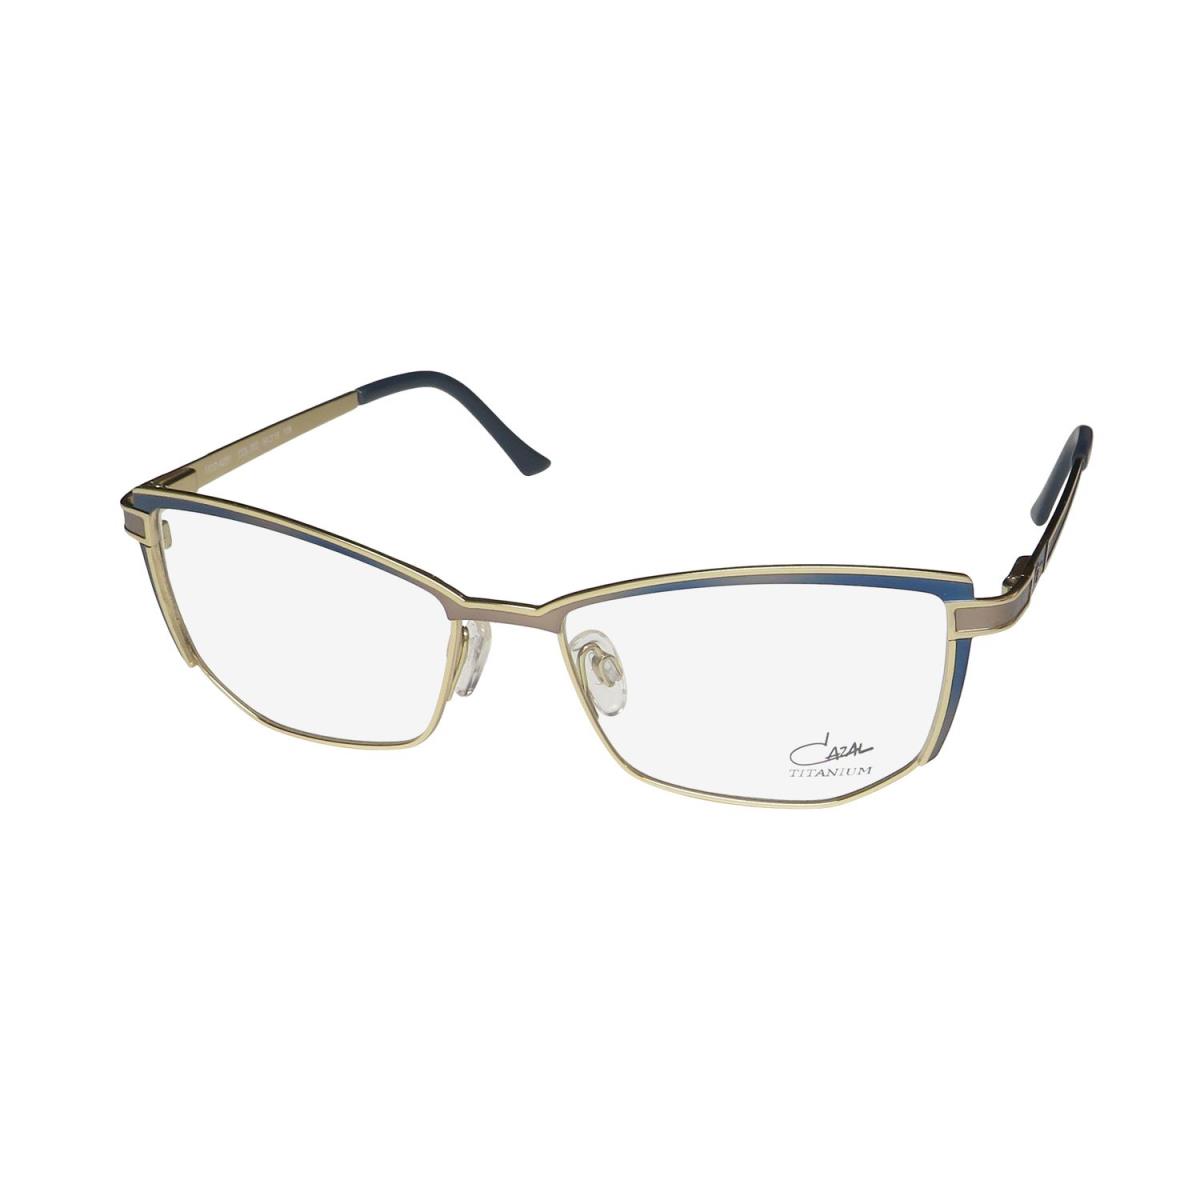 Cazal 4280 Cat Eye Titanium Full-rim German Hot Eyeglass Frame/glasses Blue / Gold